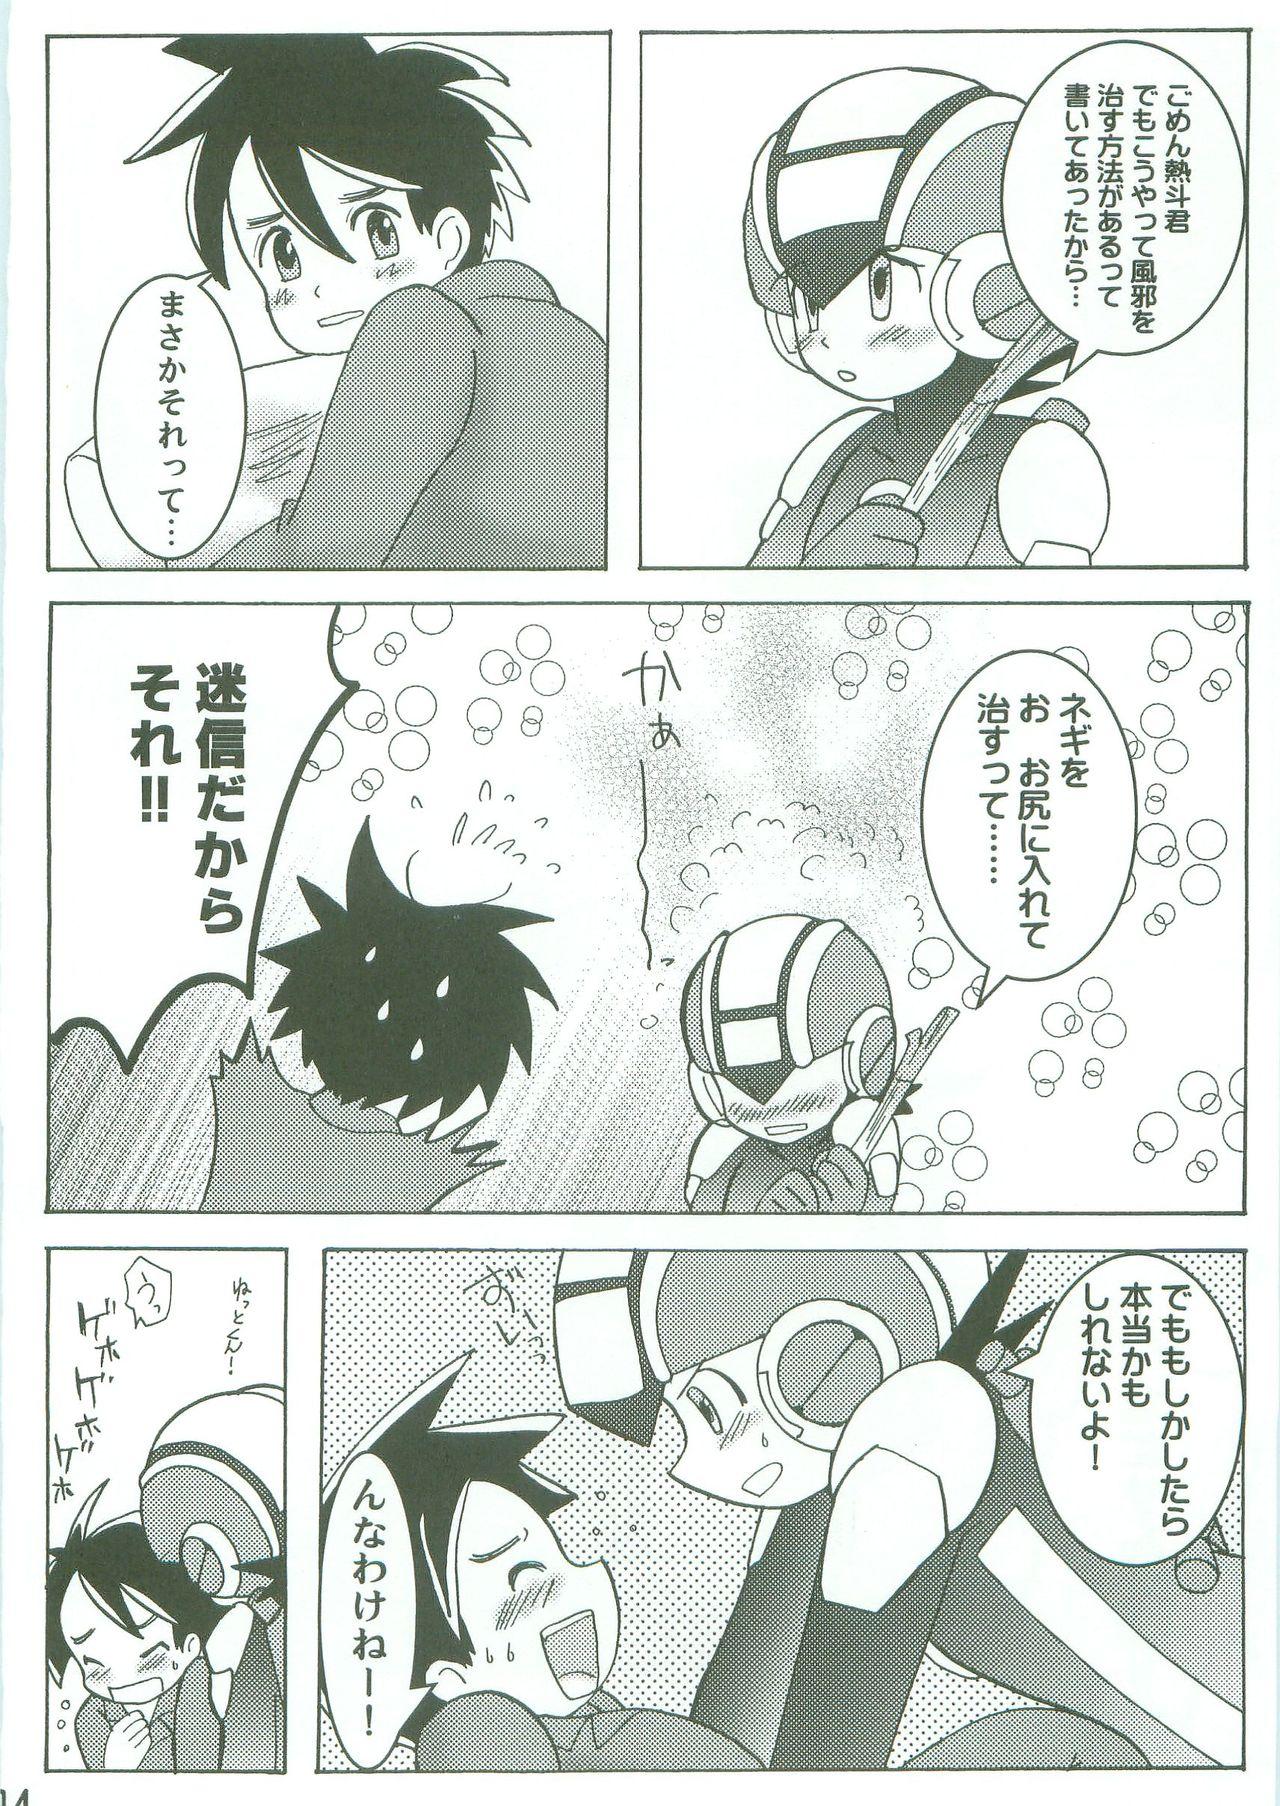 Boobs Kamonegi! (Rockman.EXE)/abemochi - Megaman battle network | rockman.exe Pretty - Page 12